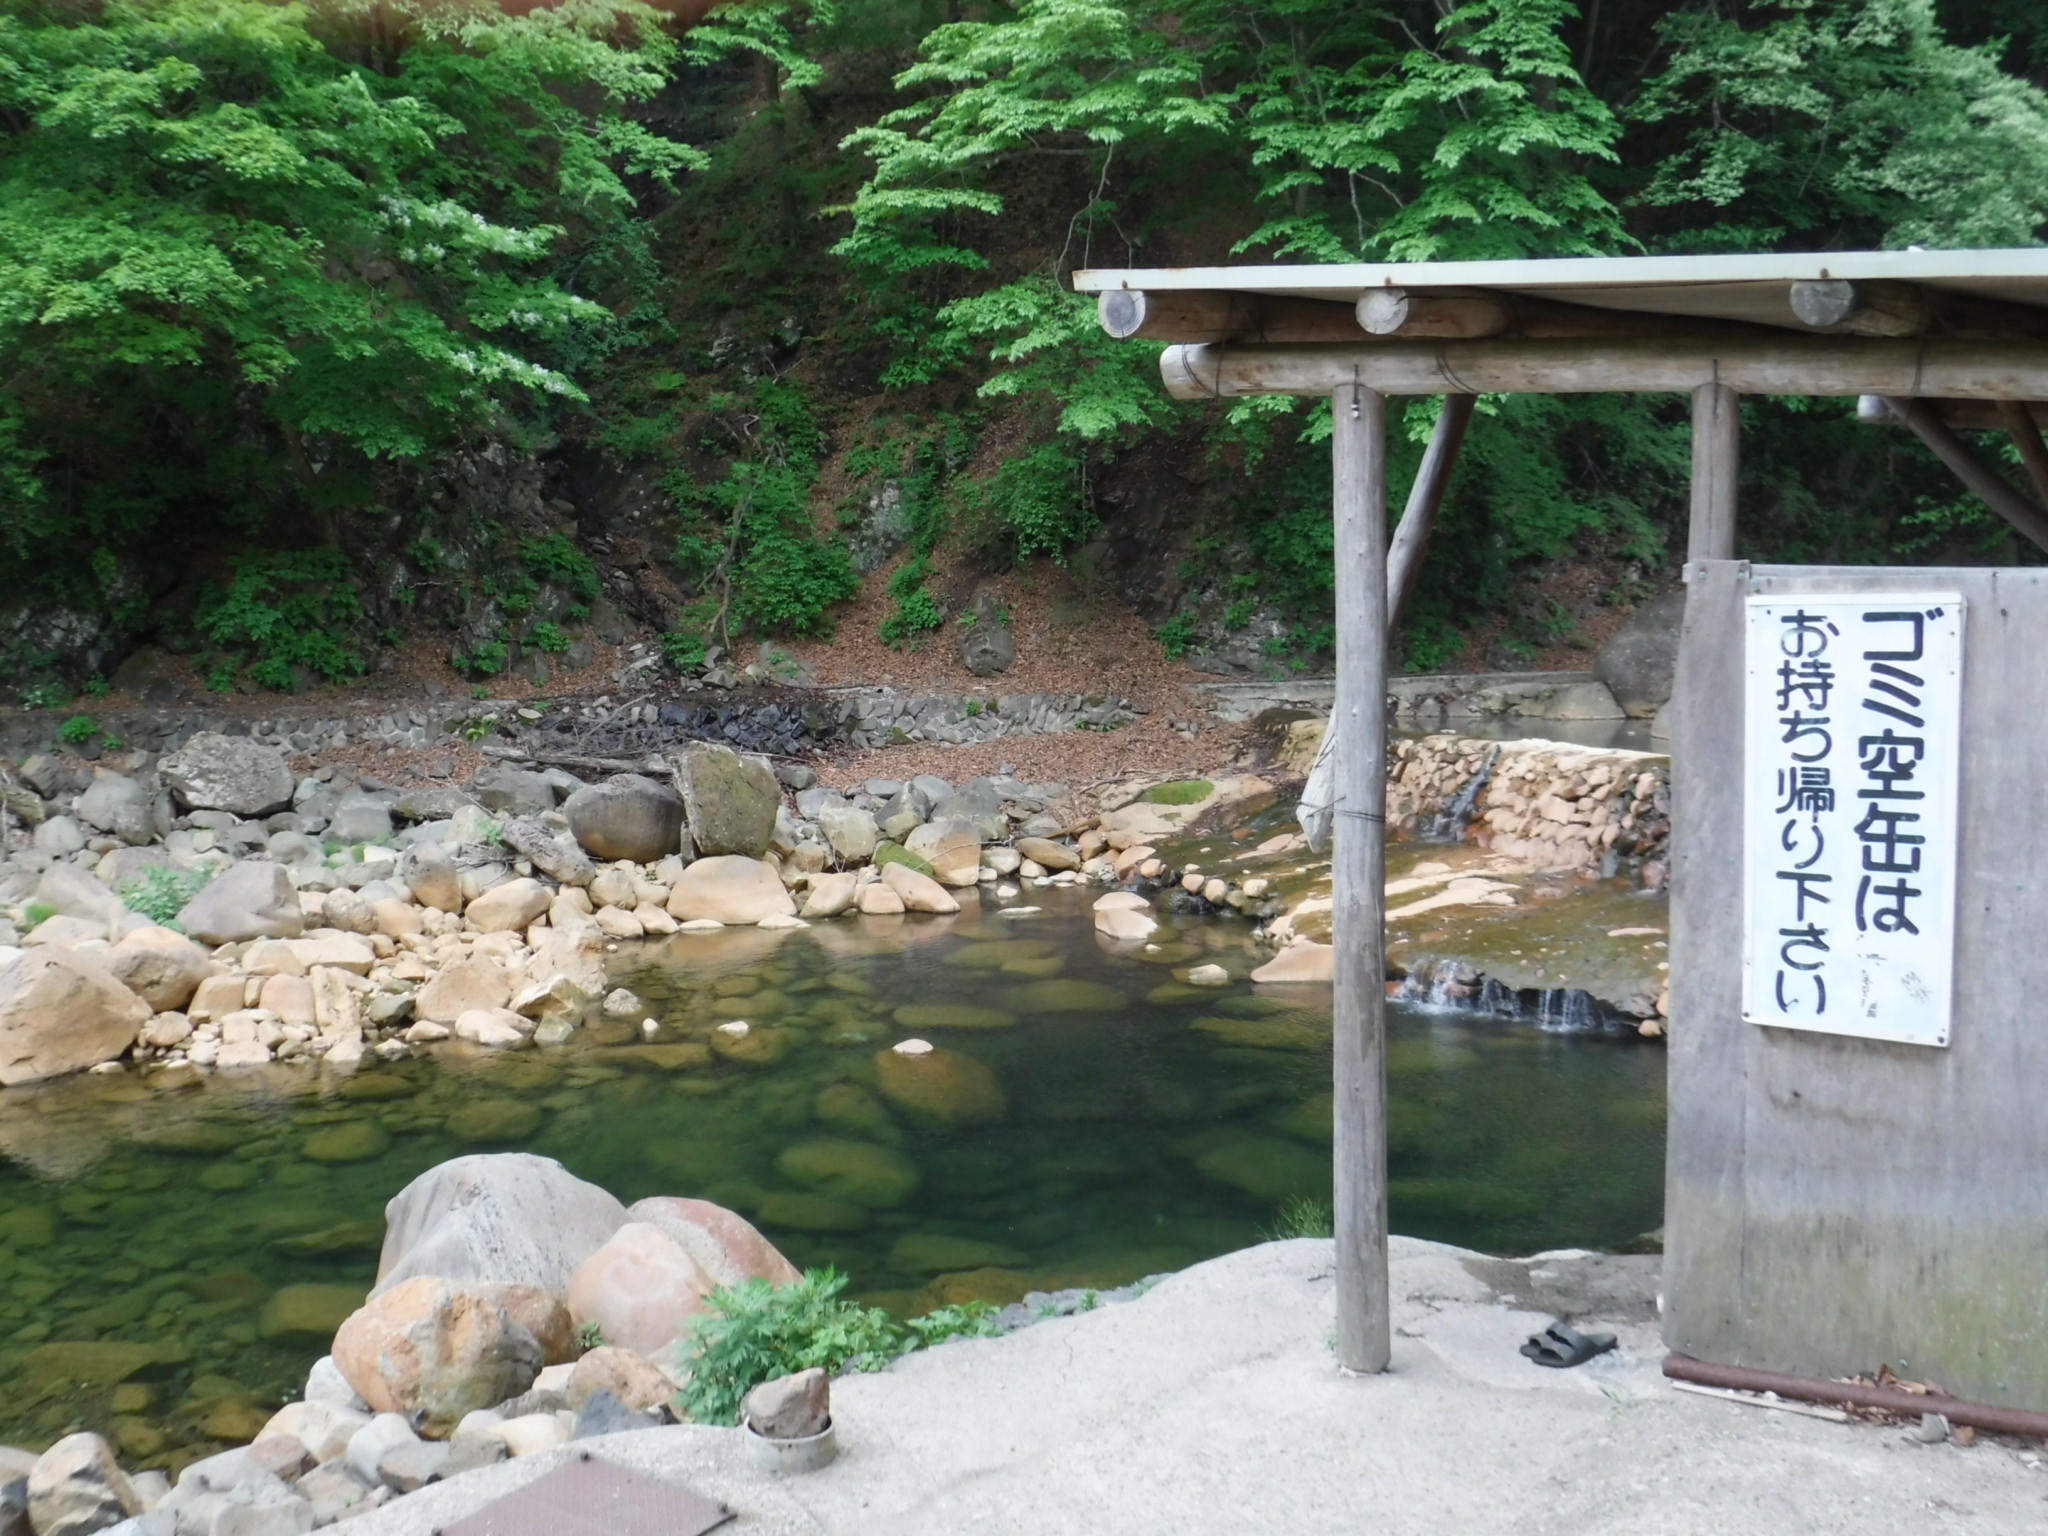 関東では貴重な川の湯